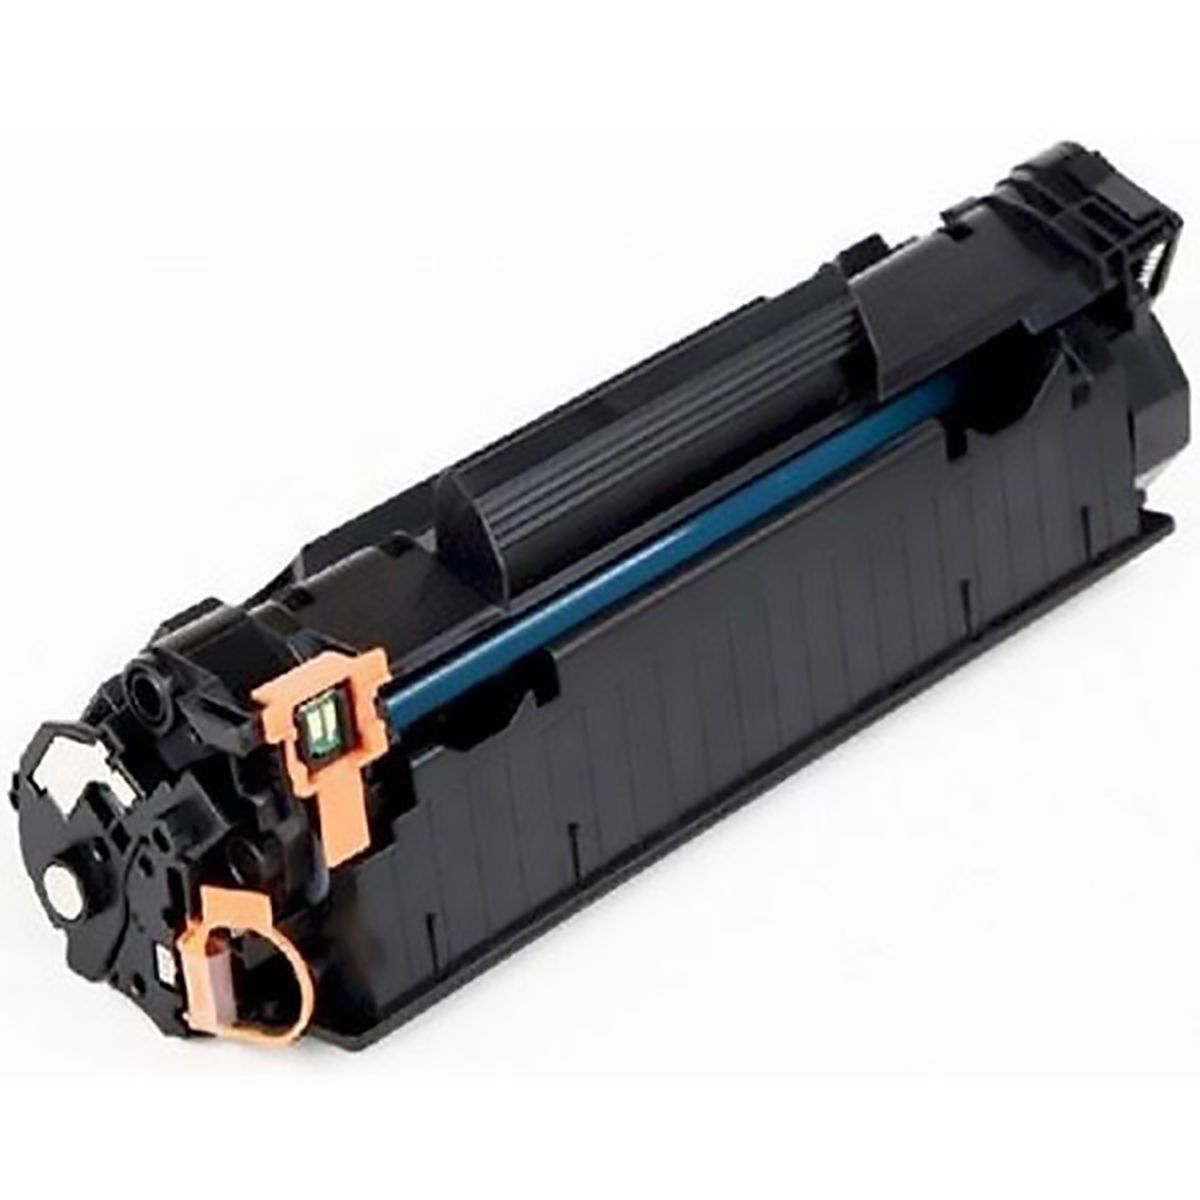 Compatível: Toner para impressora HP P1102w P1102 P 1102w P 1102 / Preto / 1.800